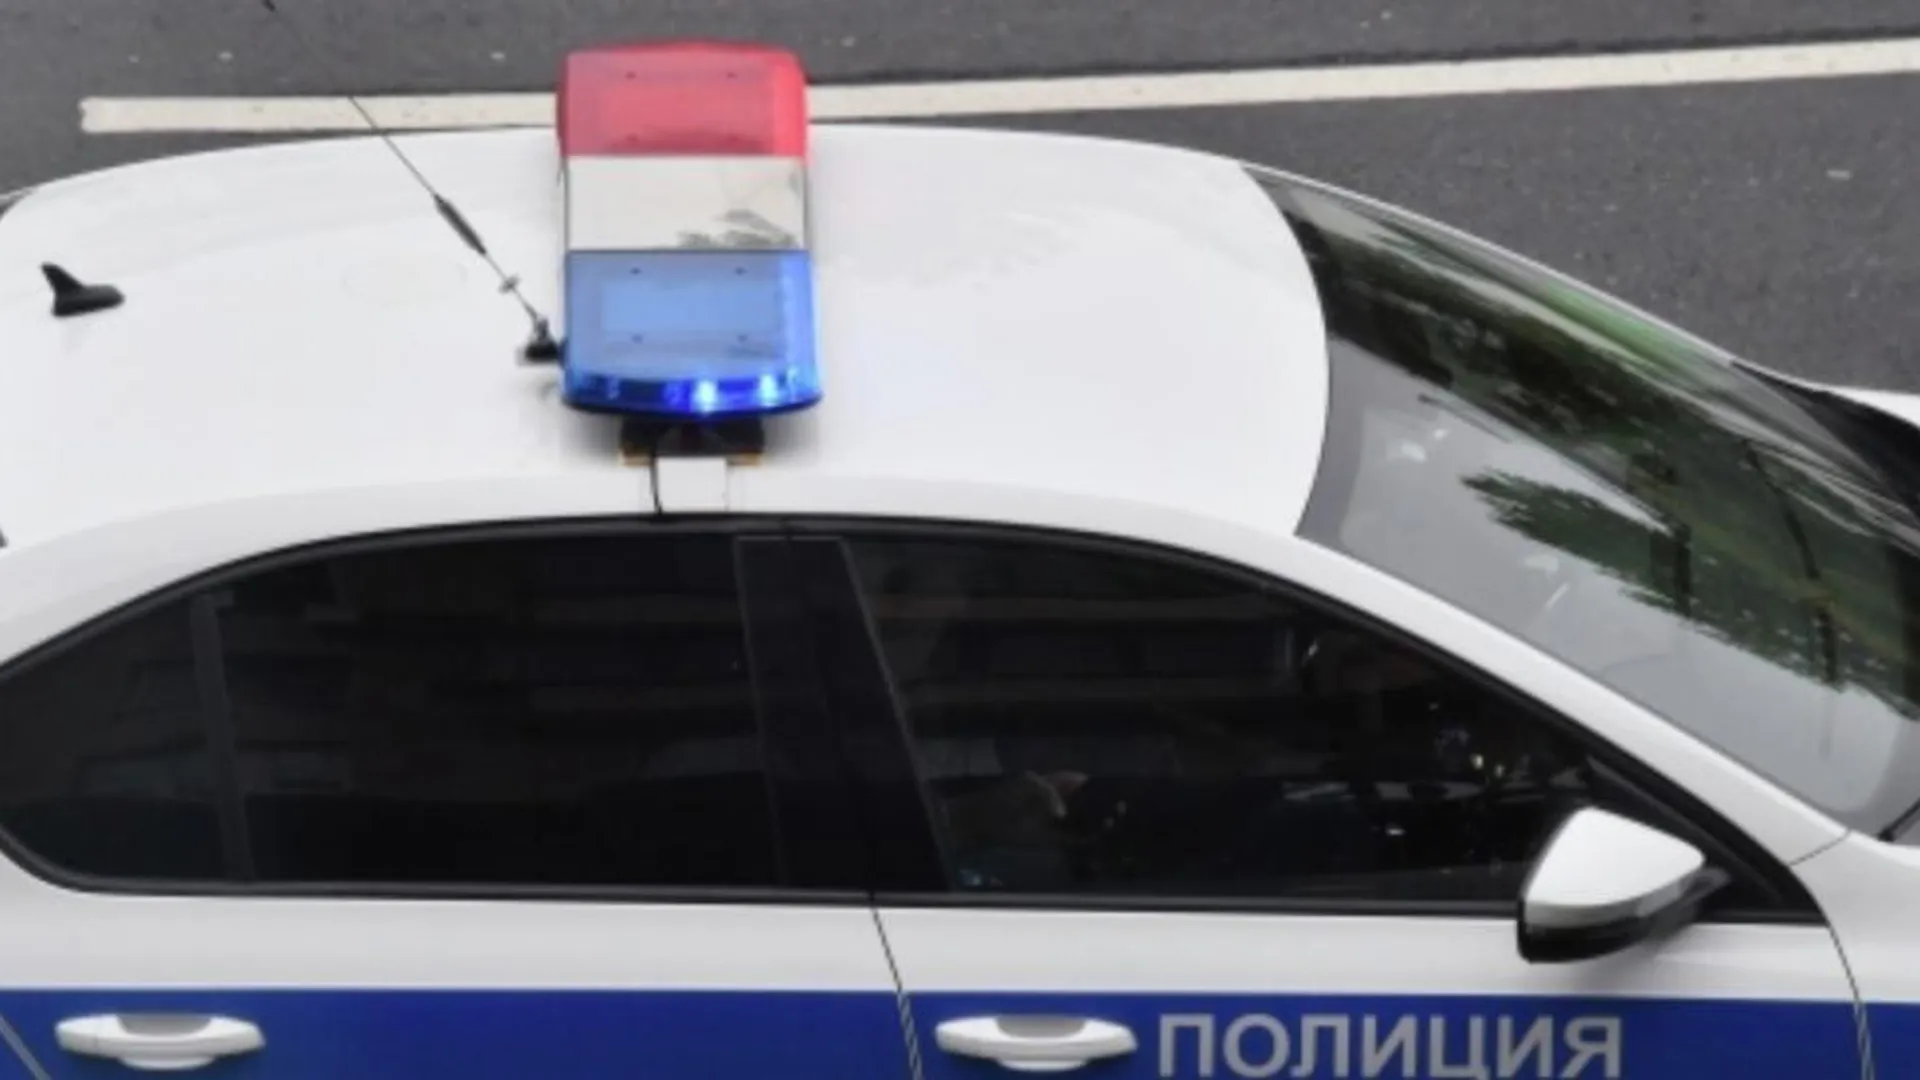 В Новой Москве задержали подозреваемого в изнасиловании 9-летней школьницы